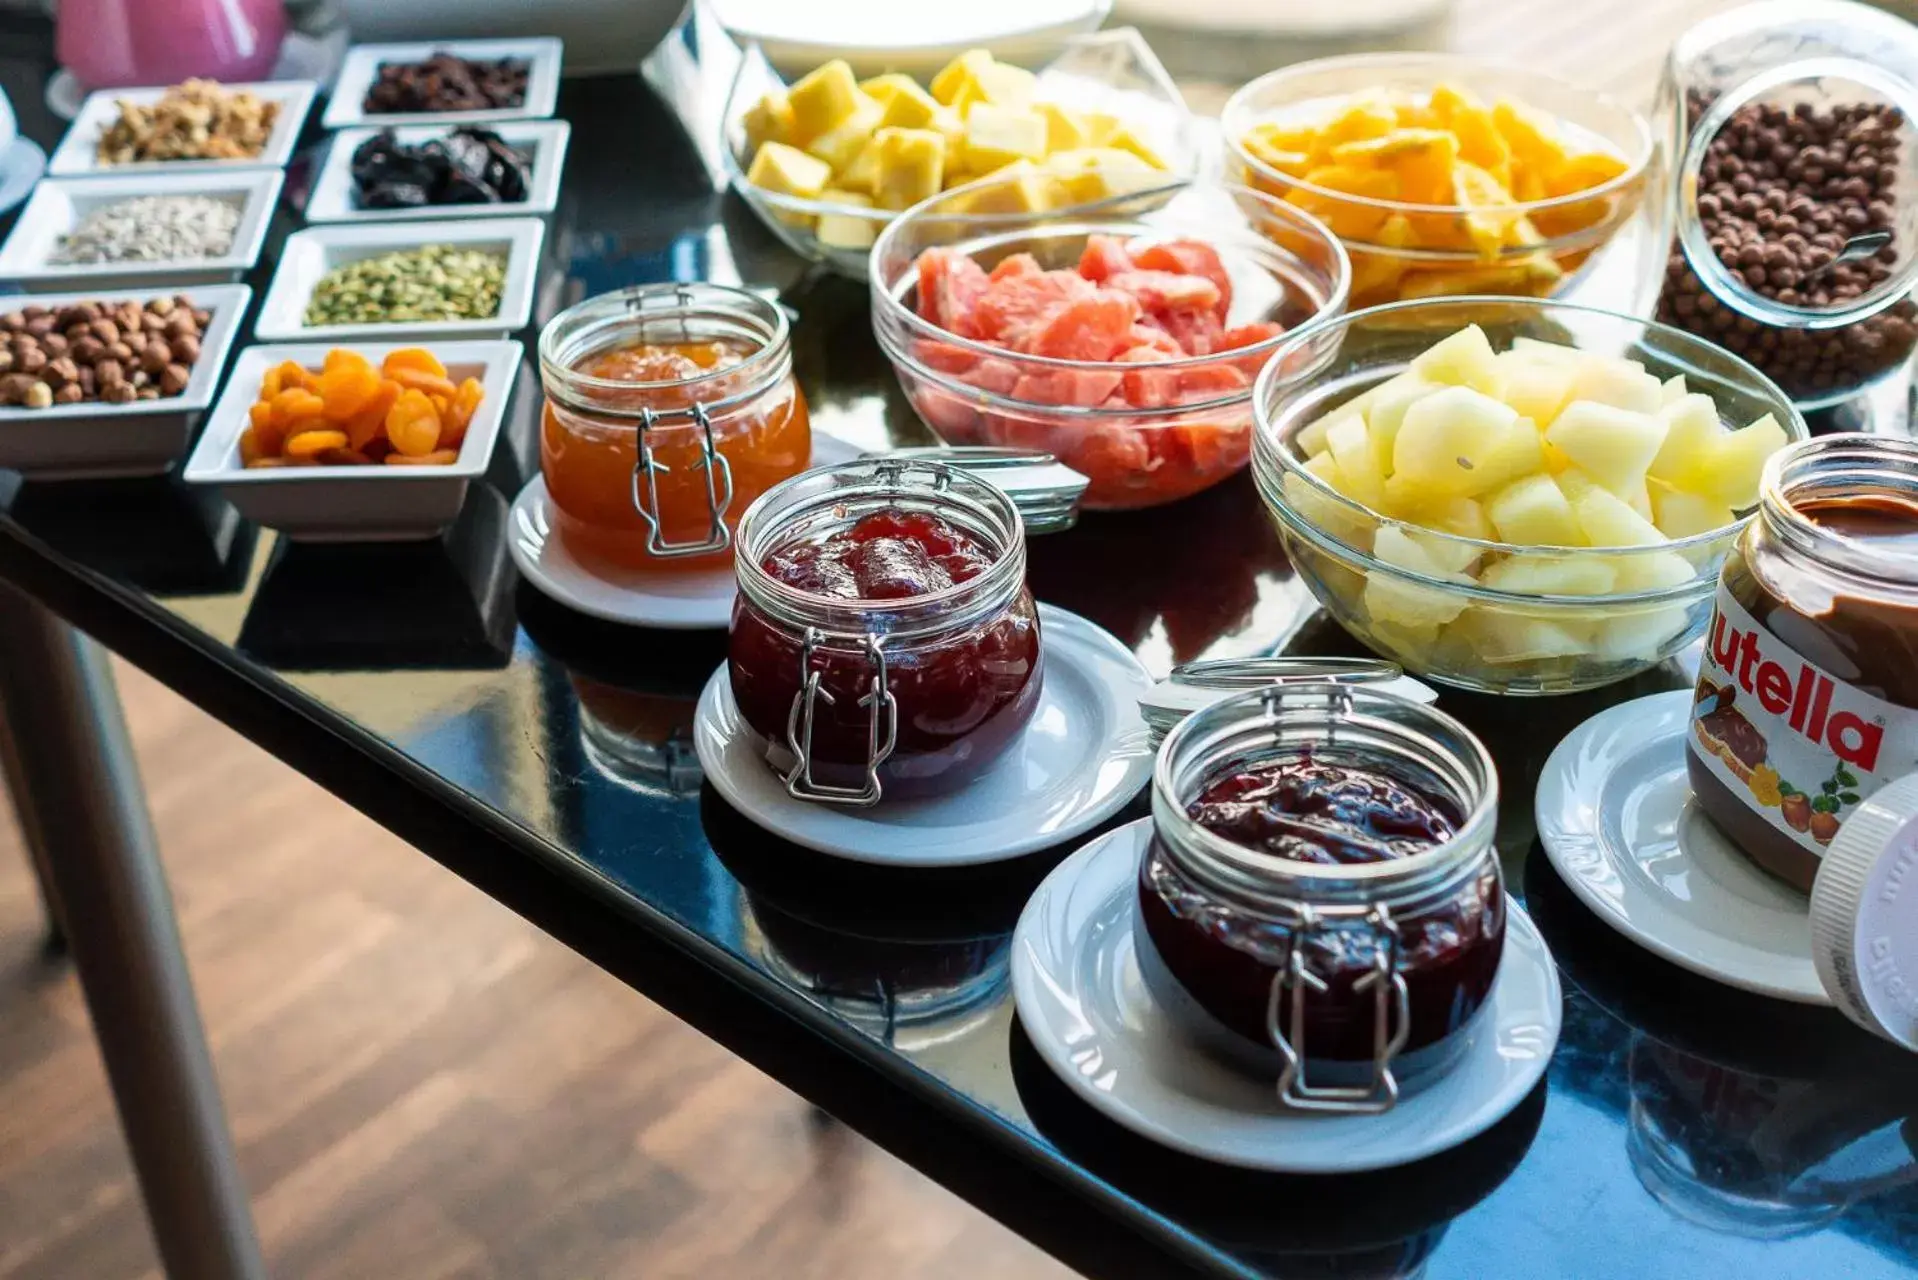 Buffet breakfast in Focus Hotel Gdańsk